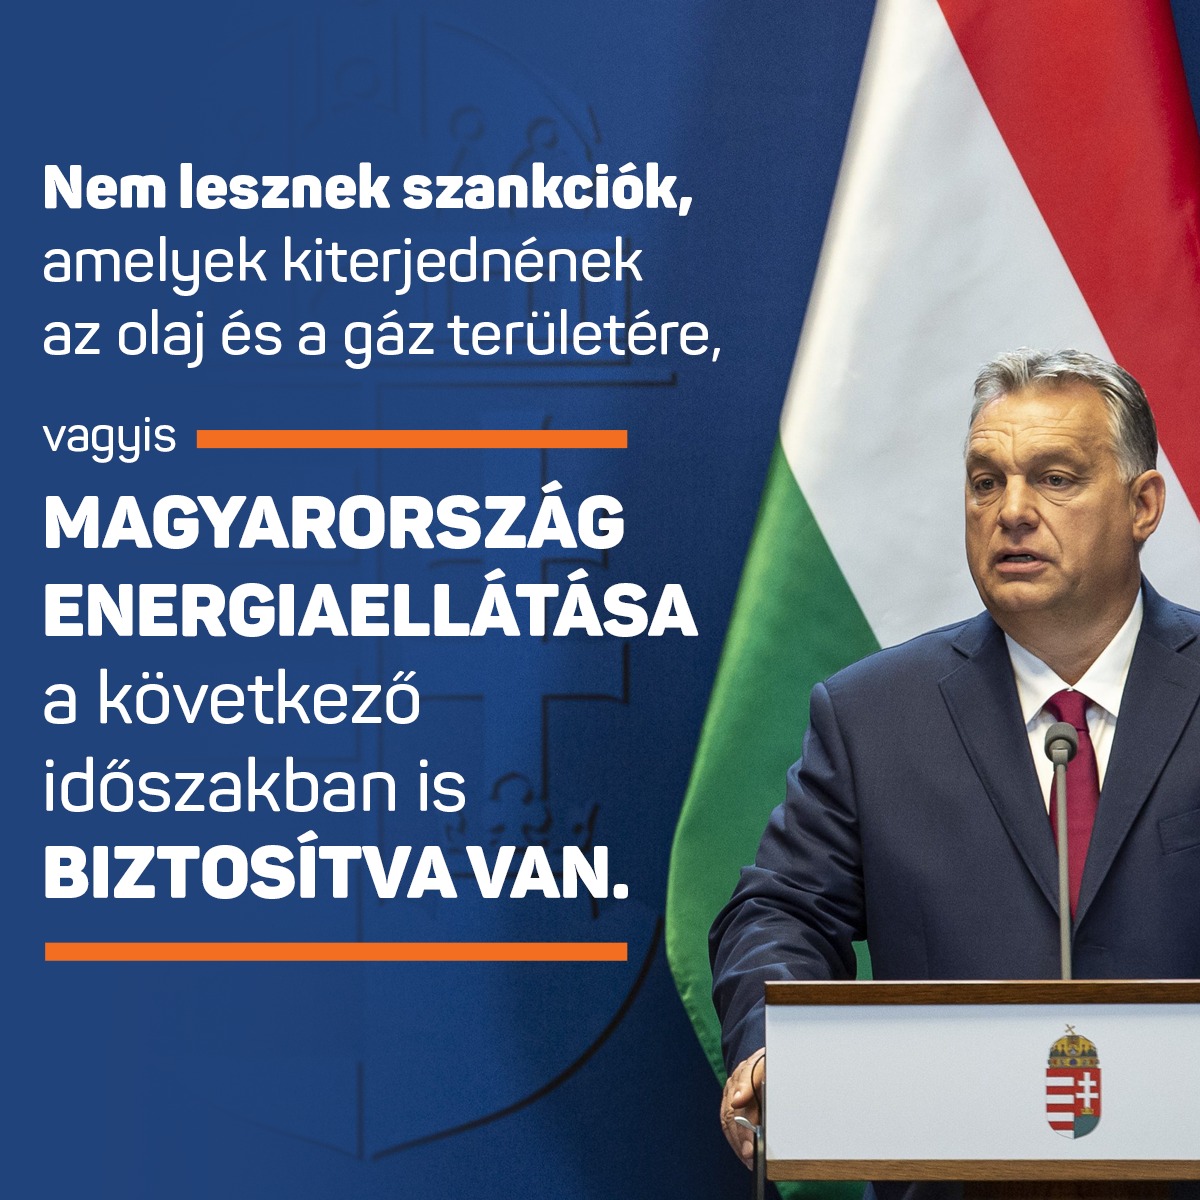 Nem lesznek szankciók, amelyek kiterjednének az olaj és a gáz területére, vagyis Magyarország energiaellátása a következő időszakban is biztosítva van.